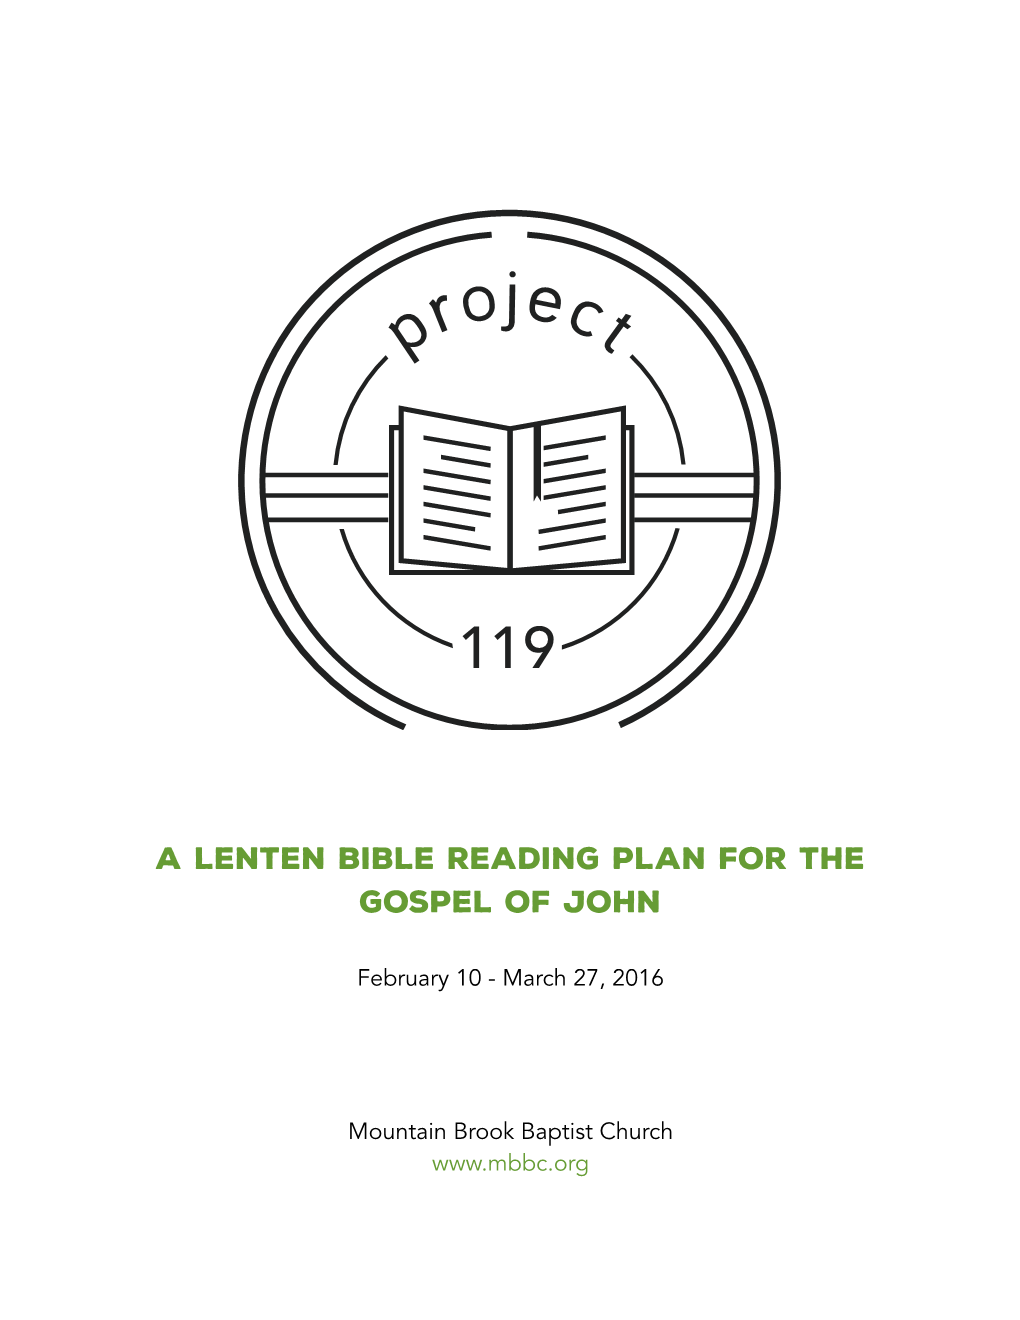 A Lenten Bible Reading Plan for the Gospel of John